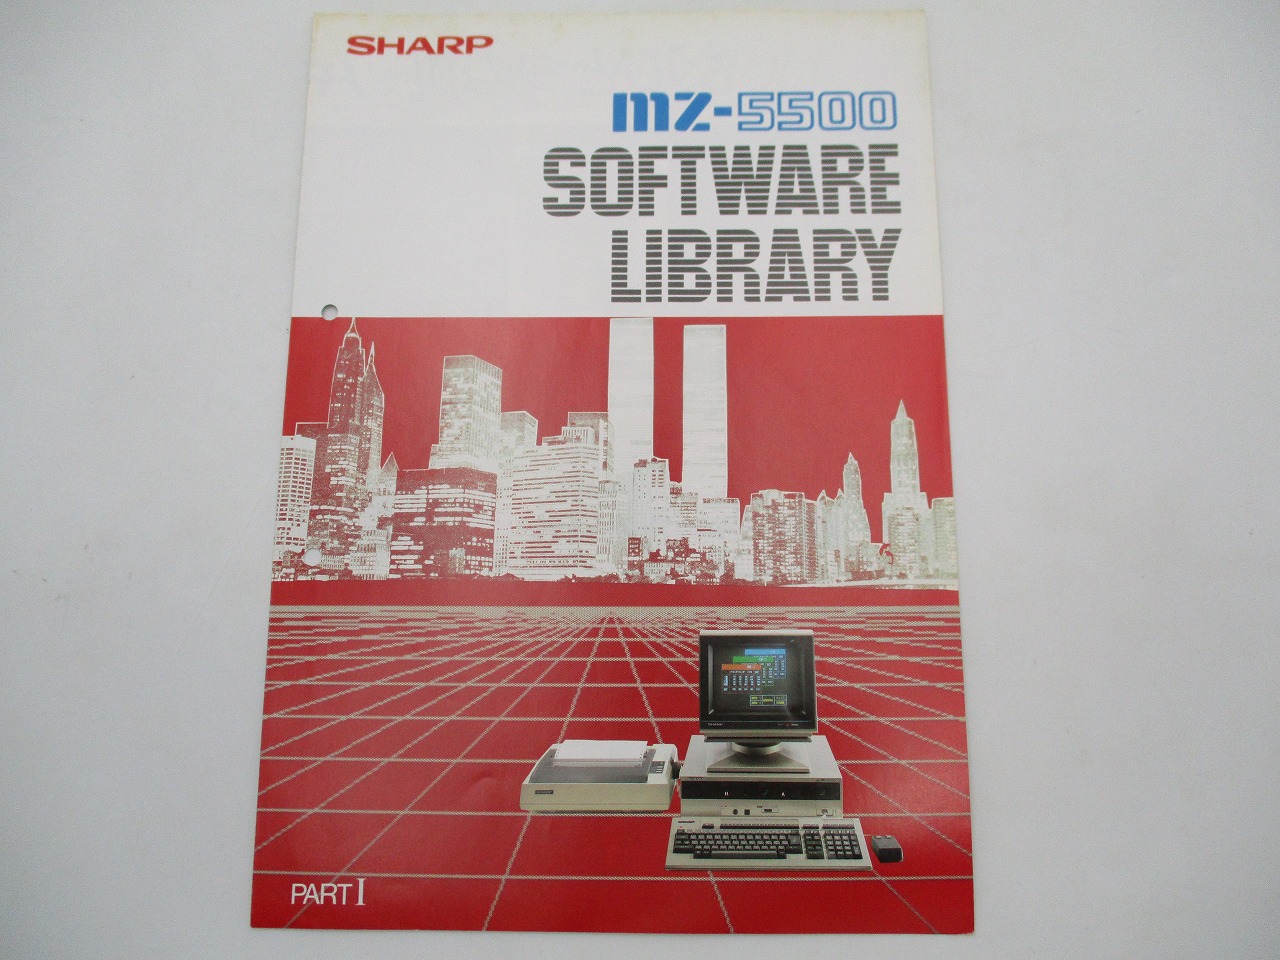 中古カタログ】SHARP MZ-5500シリーズ /ソフトウェアライブラリー 